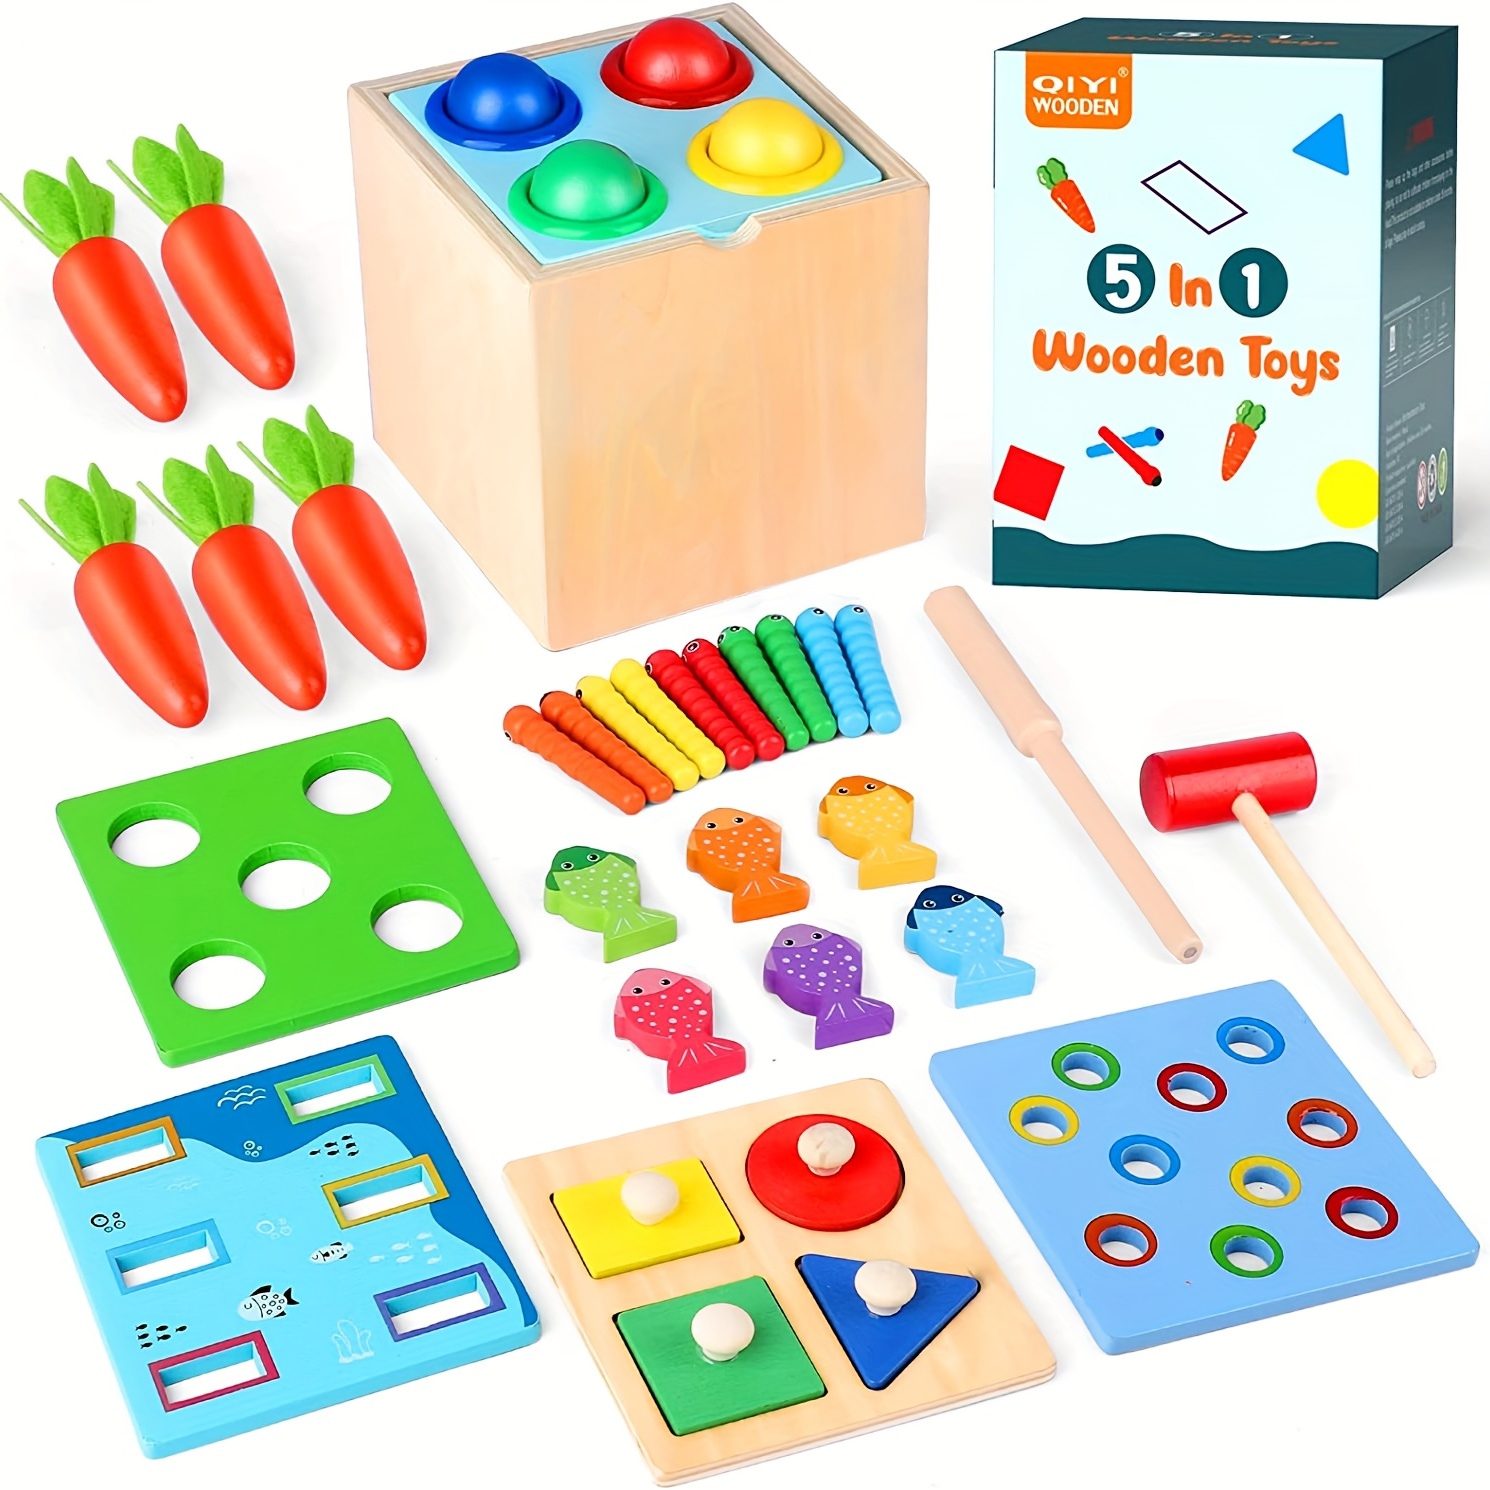  Juguetes Montessori de madera para niños de 1 año, 5